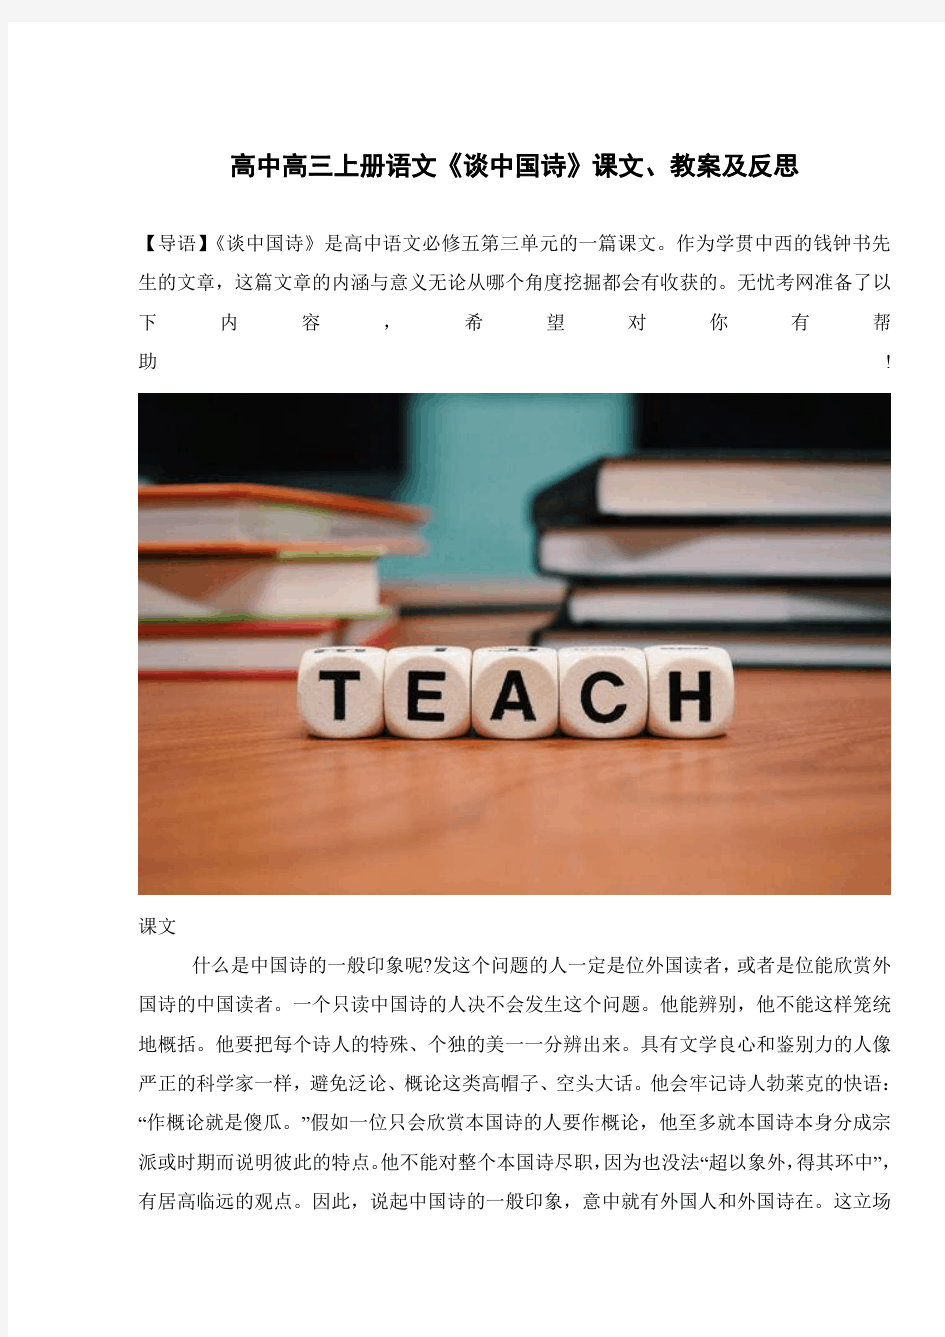 高中高三上册语文《谈中国诗》课文、教案及反思